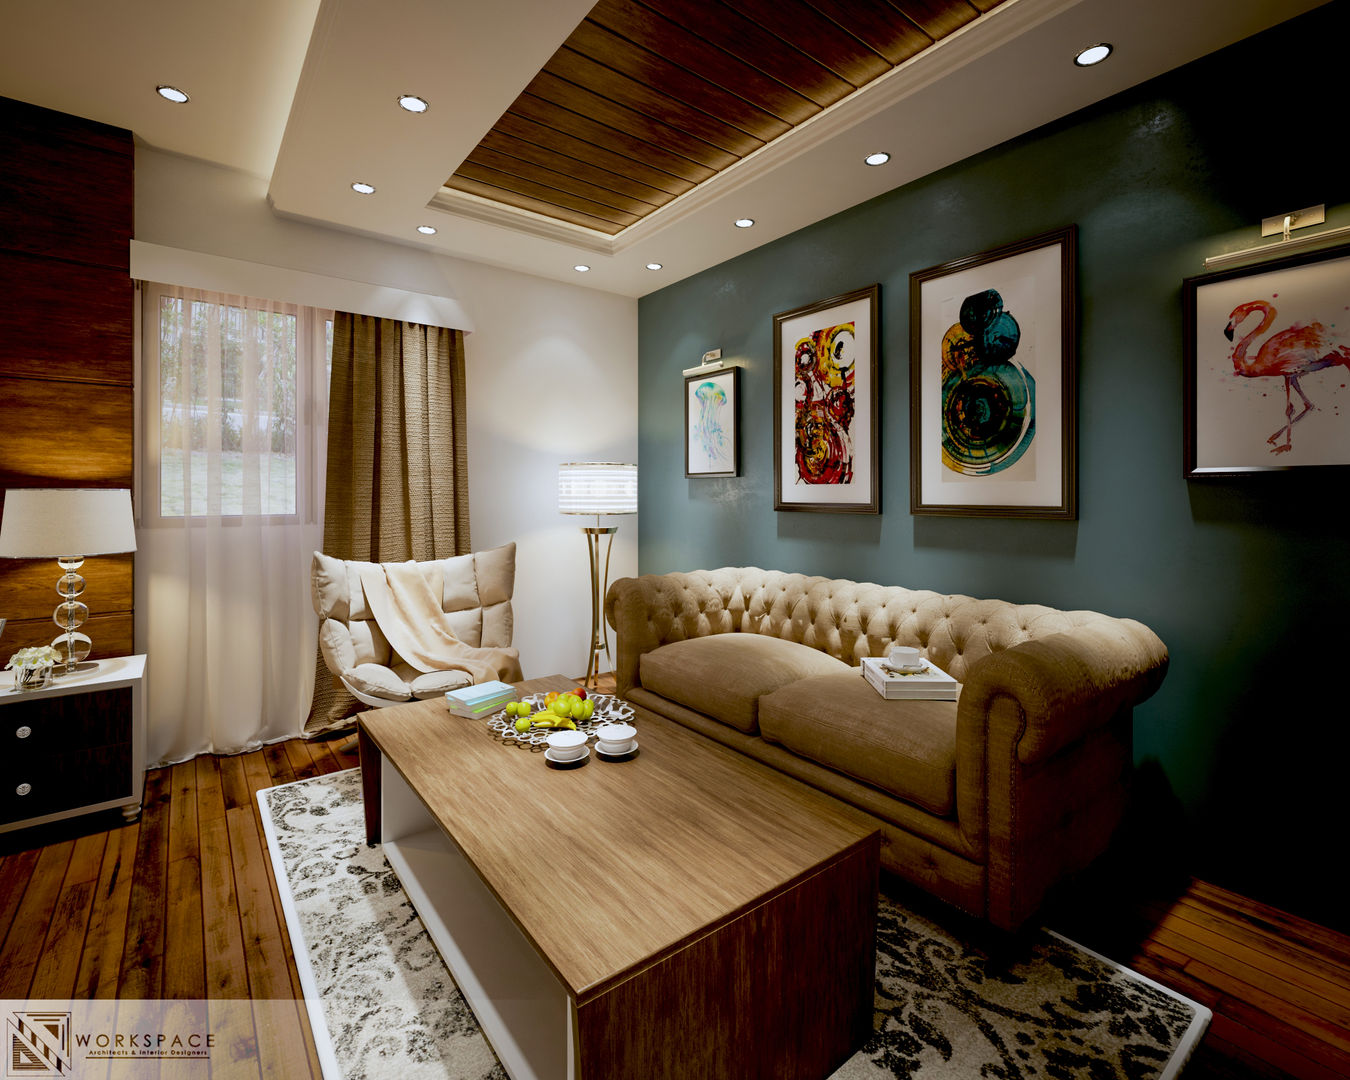 Royal suite | Bedroom, WORKSPACE architects & interior designers WORKSPACE architects & interior designers Habitaciones modernas